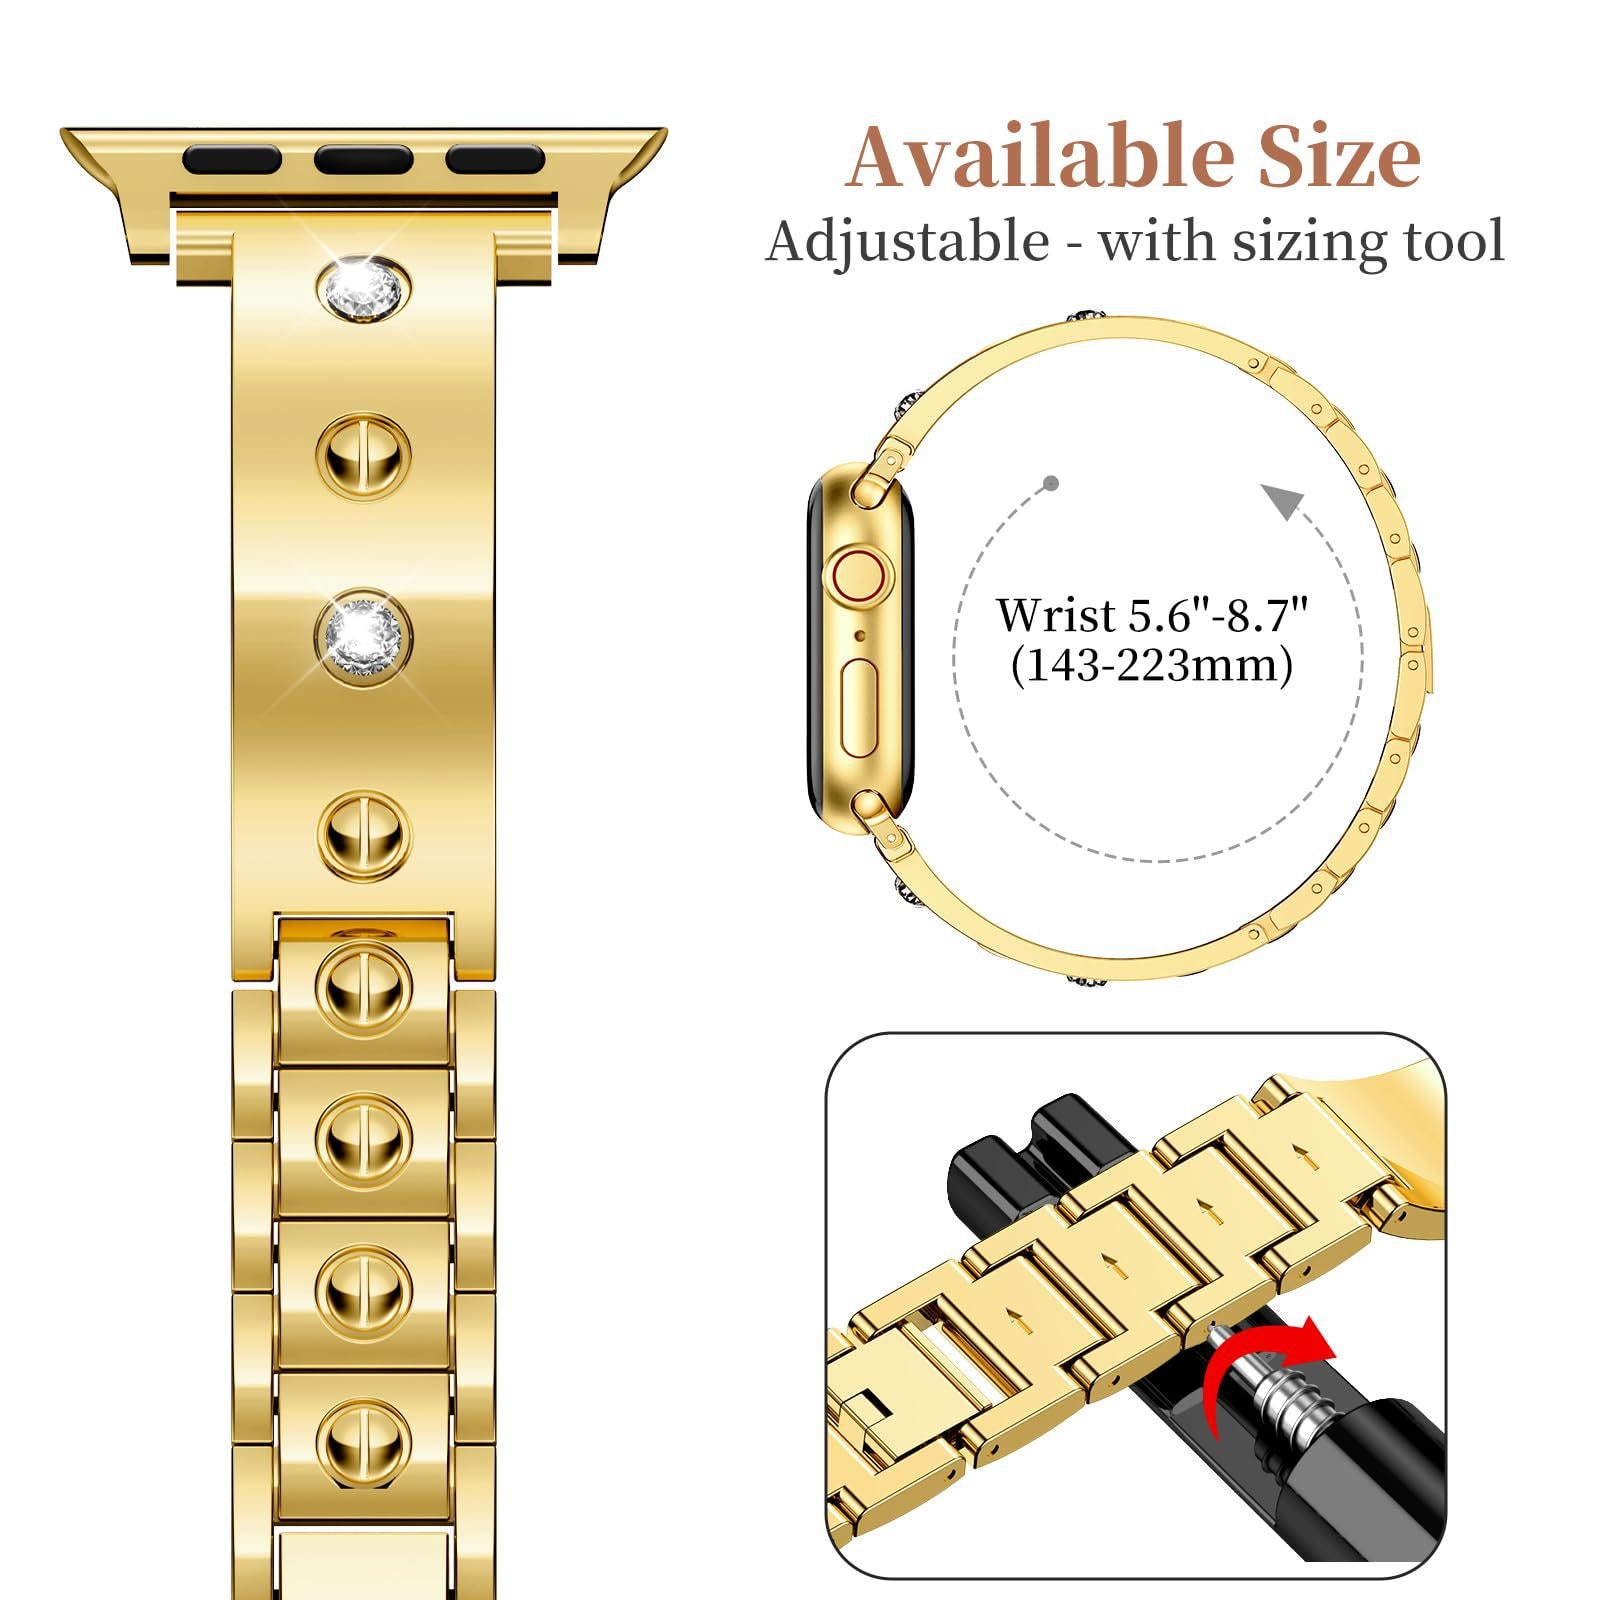 Bangle Diamond Bracelet Apple Watch SE 40mm gold